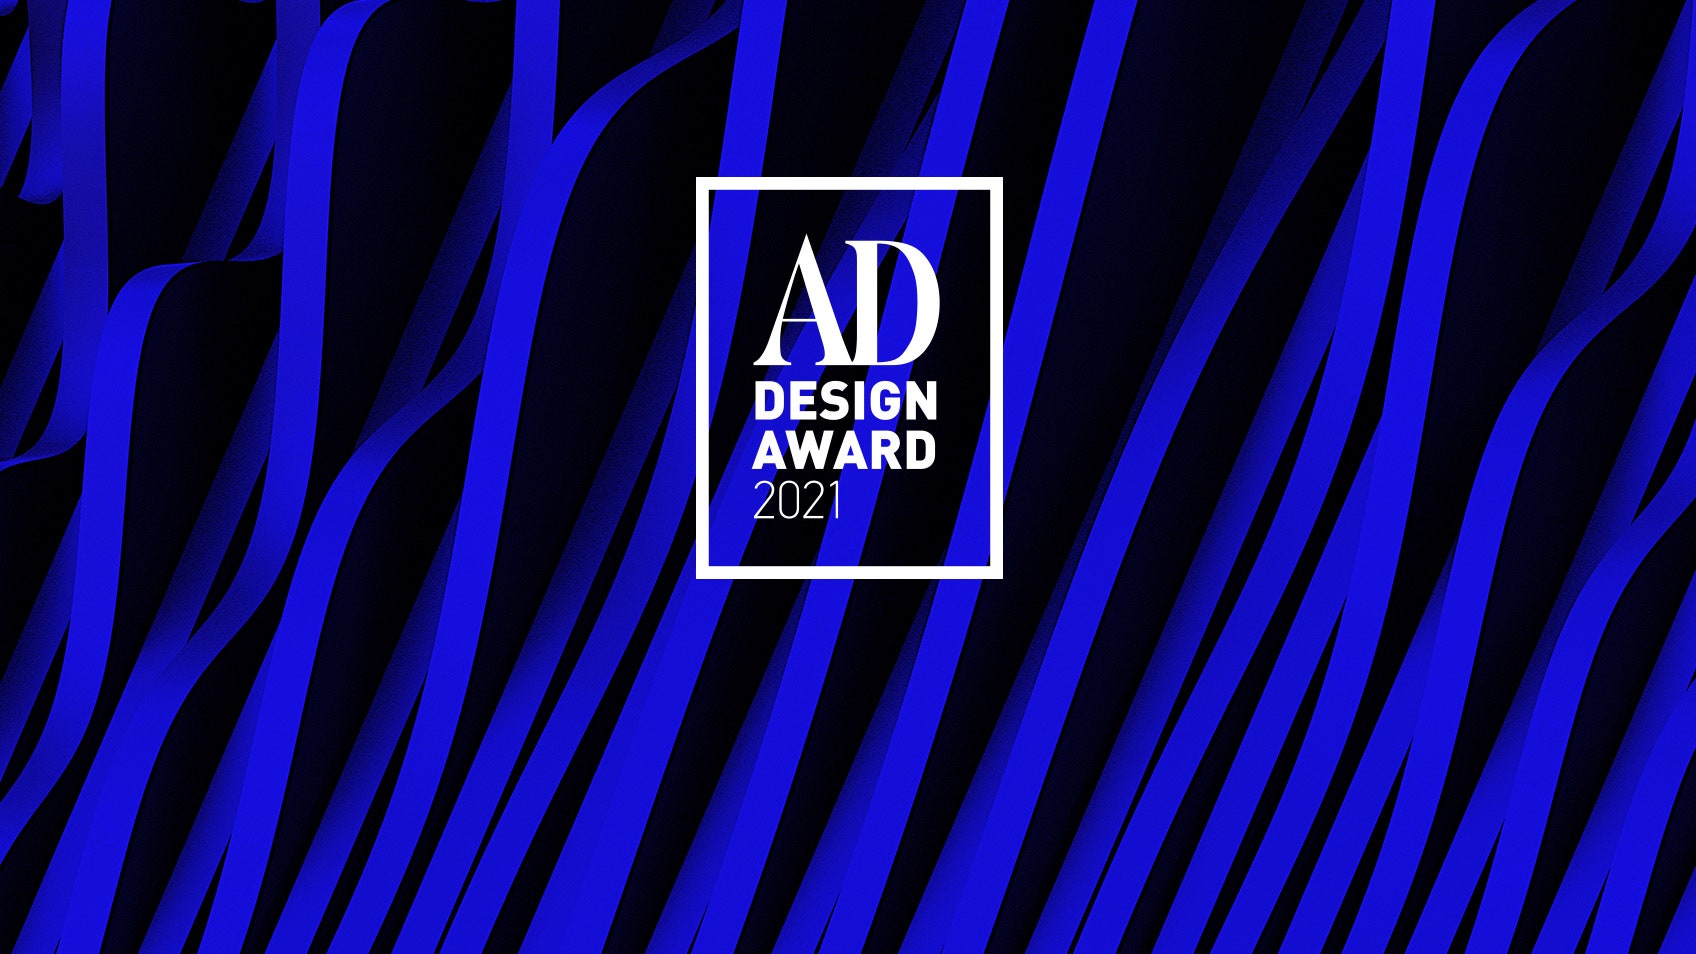 Голосование AD Design Award 2021 началось